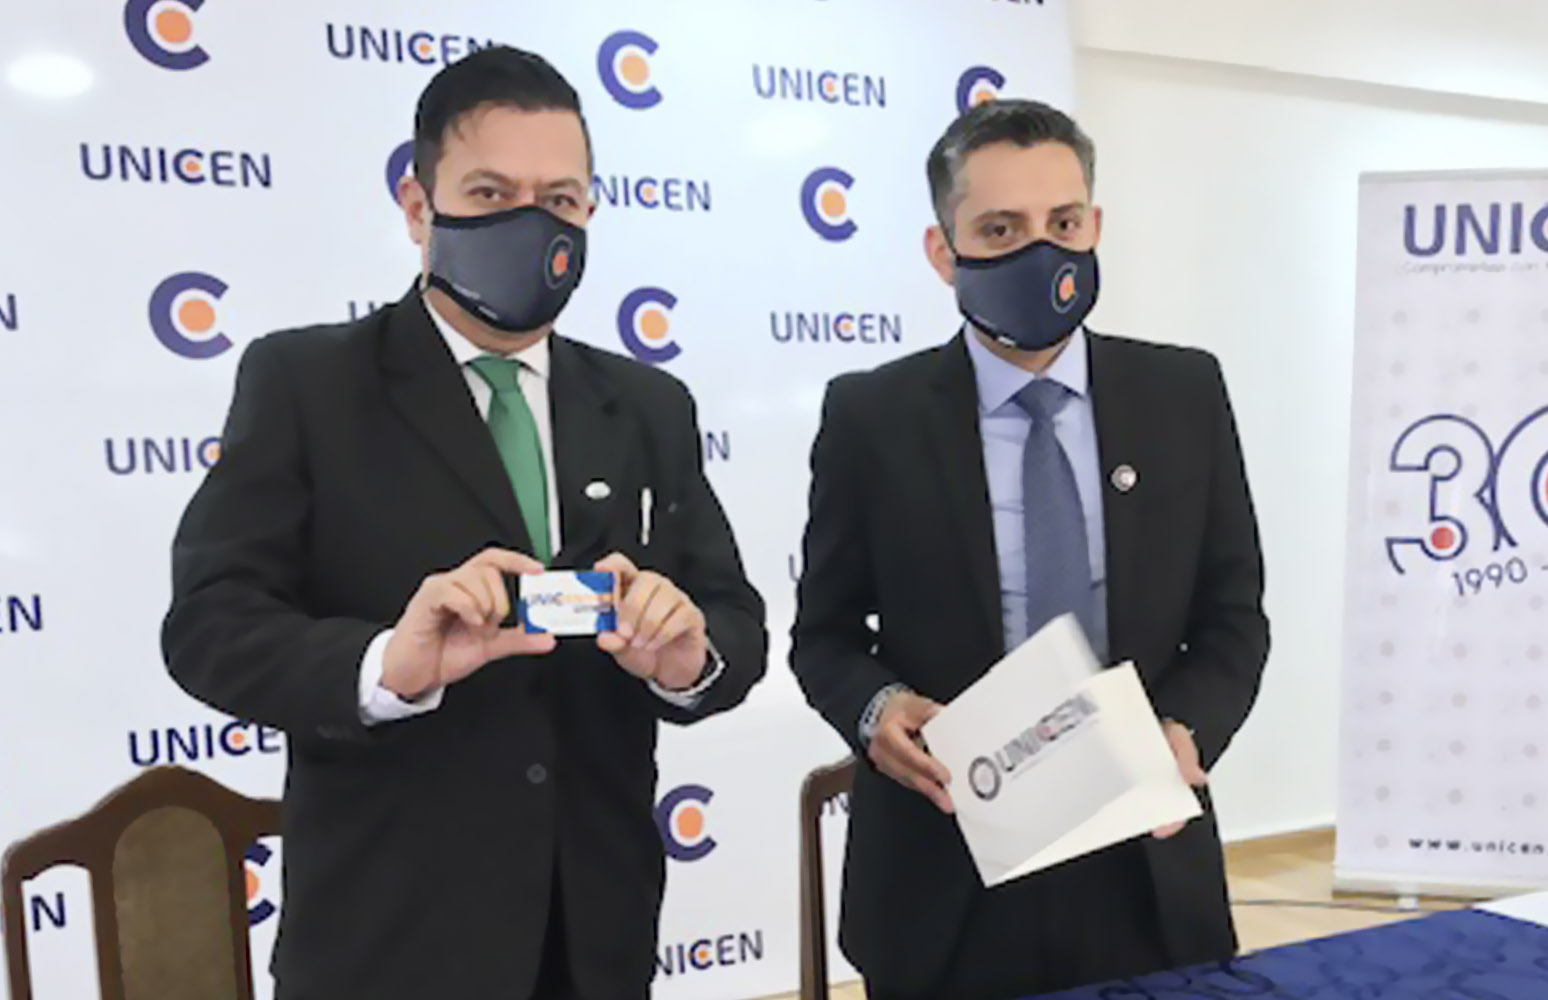 Lanzamiento de “UNICENTER”, una plataforma única en Bolivia con servicios gratuitos para bachilleres